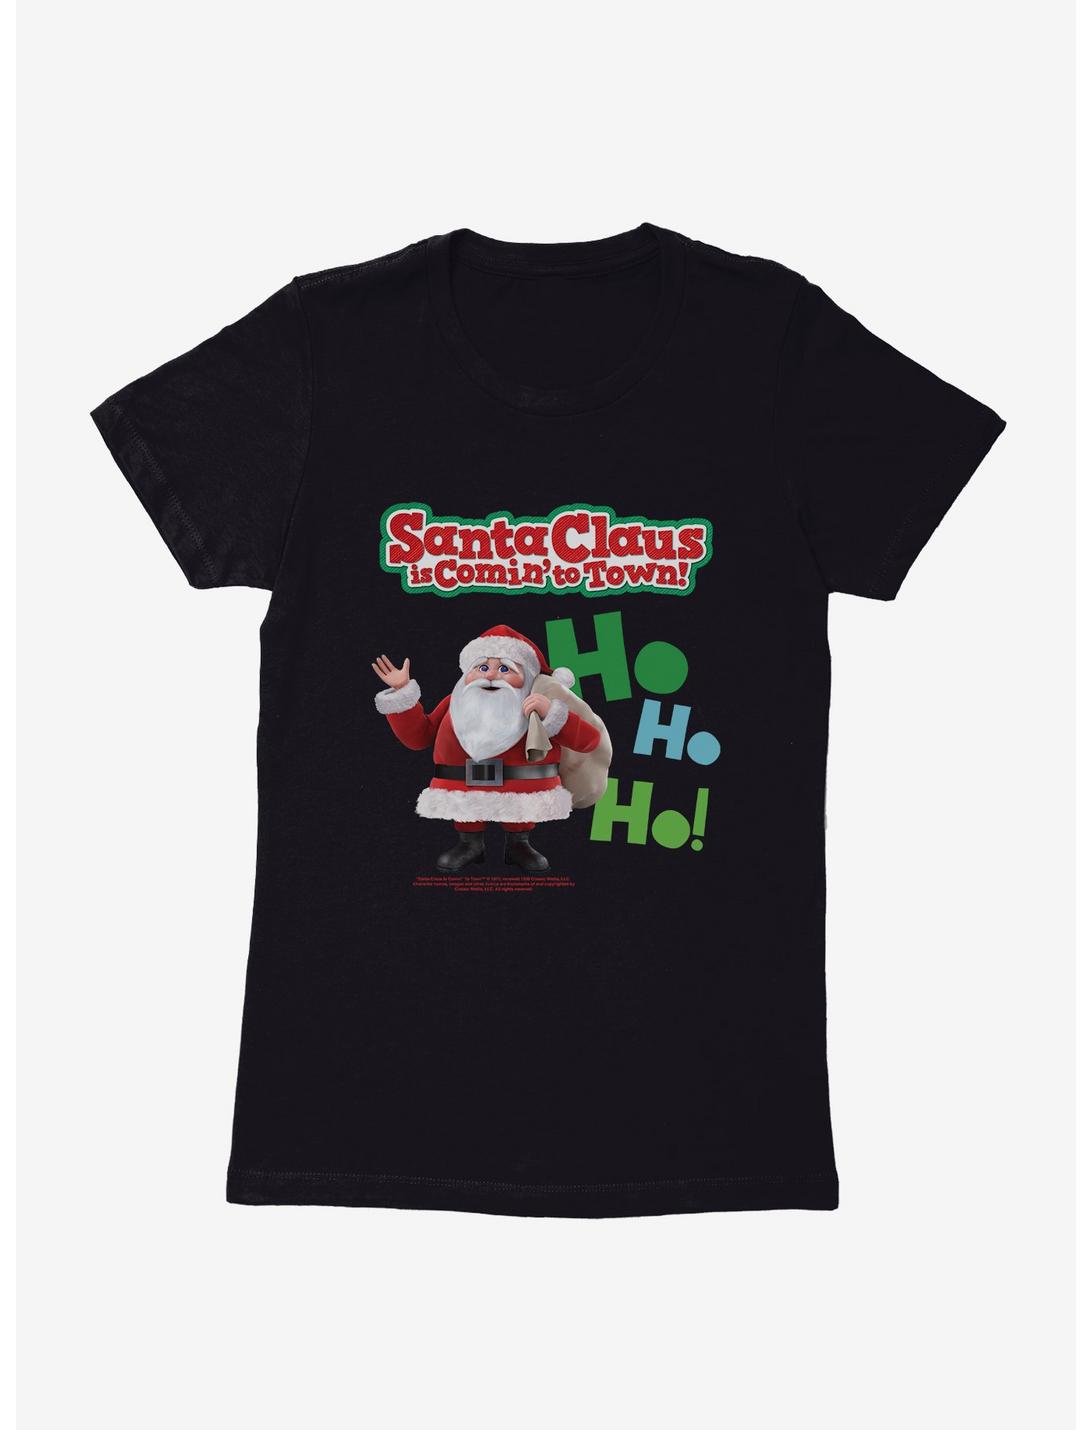 Santa Claus Is Comin' To Town! Ho Ho Ho! Santa Claus Womens T-Shirt, , hi-res